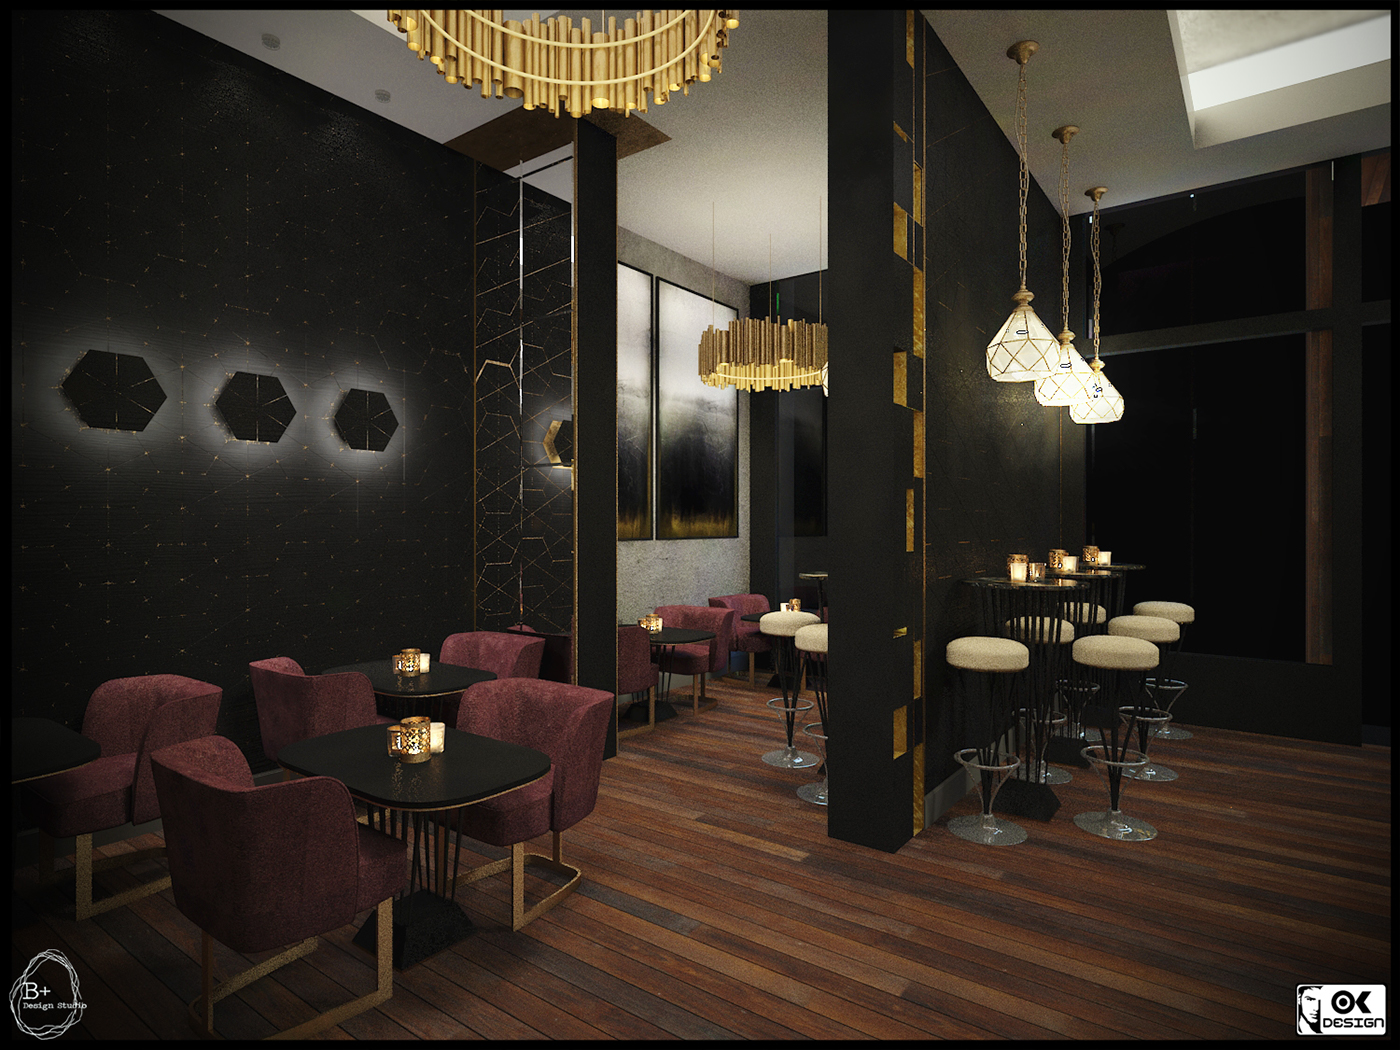 Interior design cafe restaurant architecture